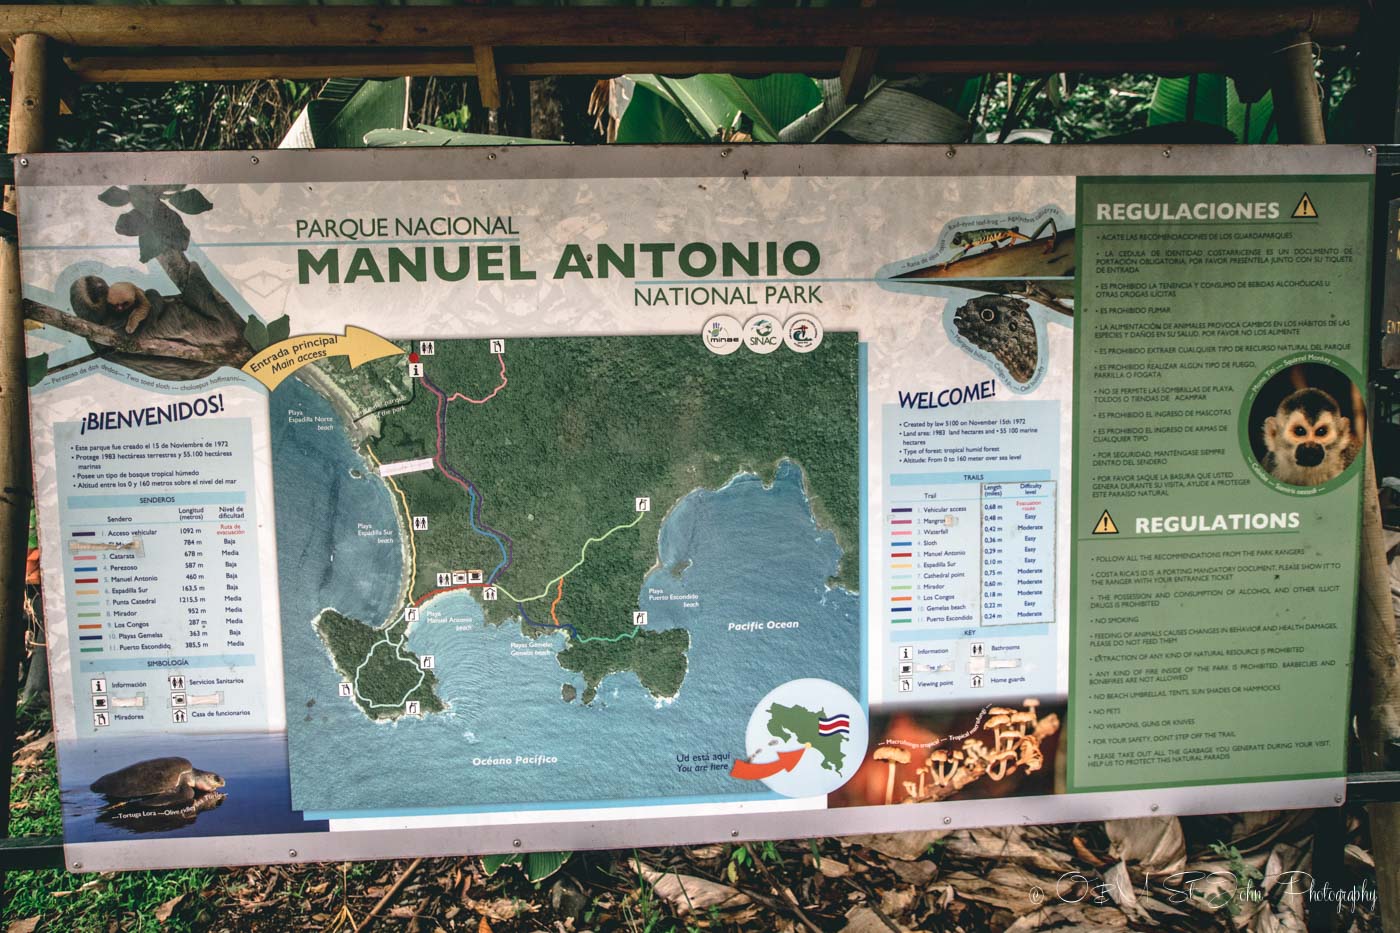 曼努埃尔·安东尼奥国家公园:曼努埃尔·安东尼奥国家公园的步行图